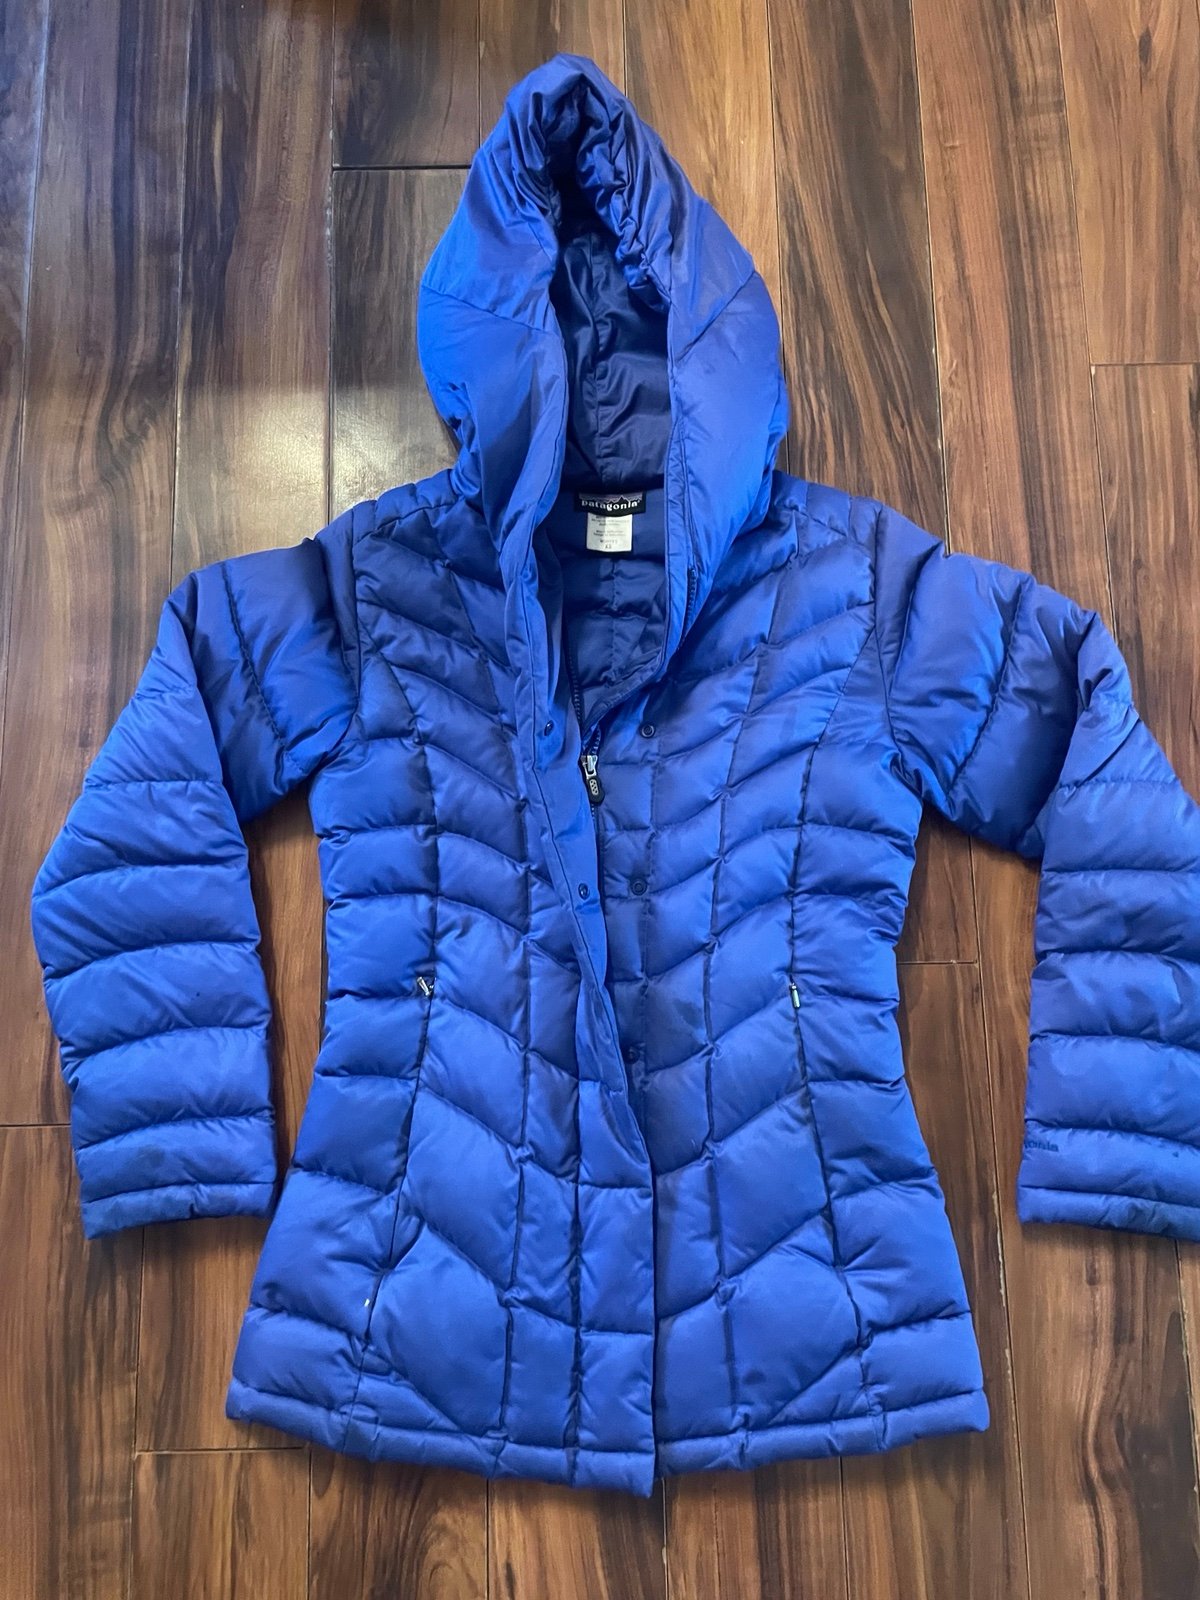 Patagonia Goose Down Blue Puffer Jacket Size -XS cyNrDg